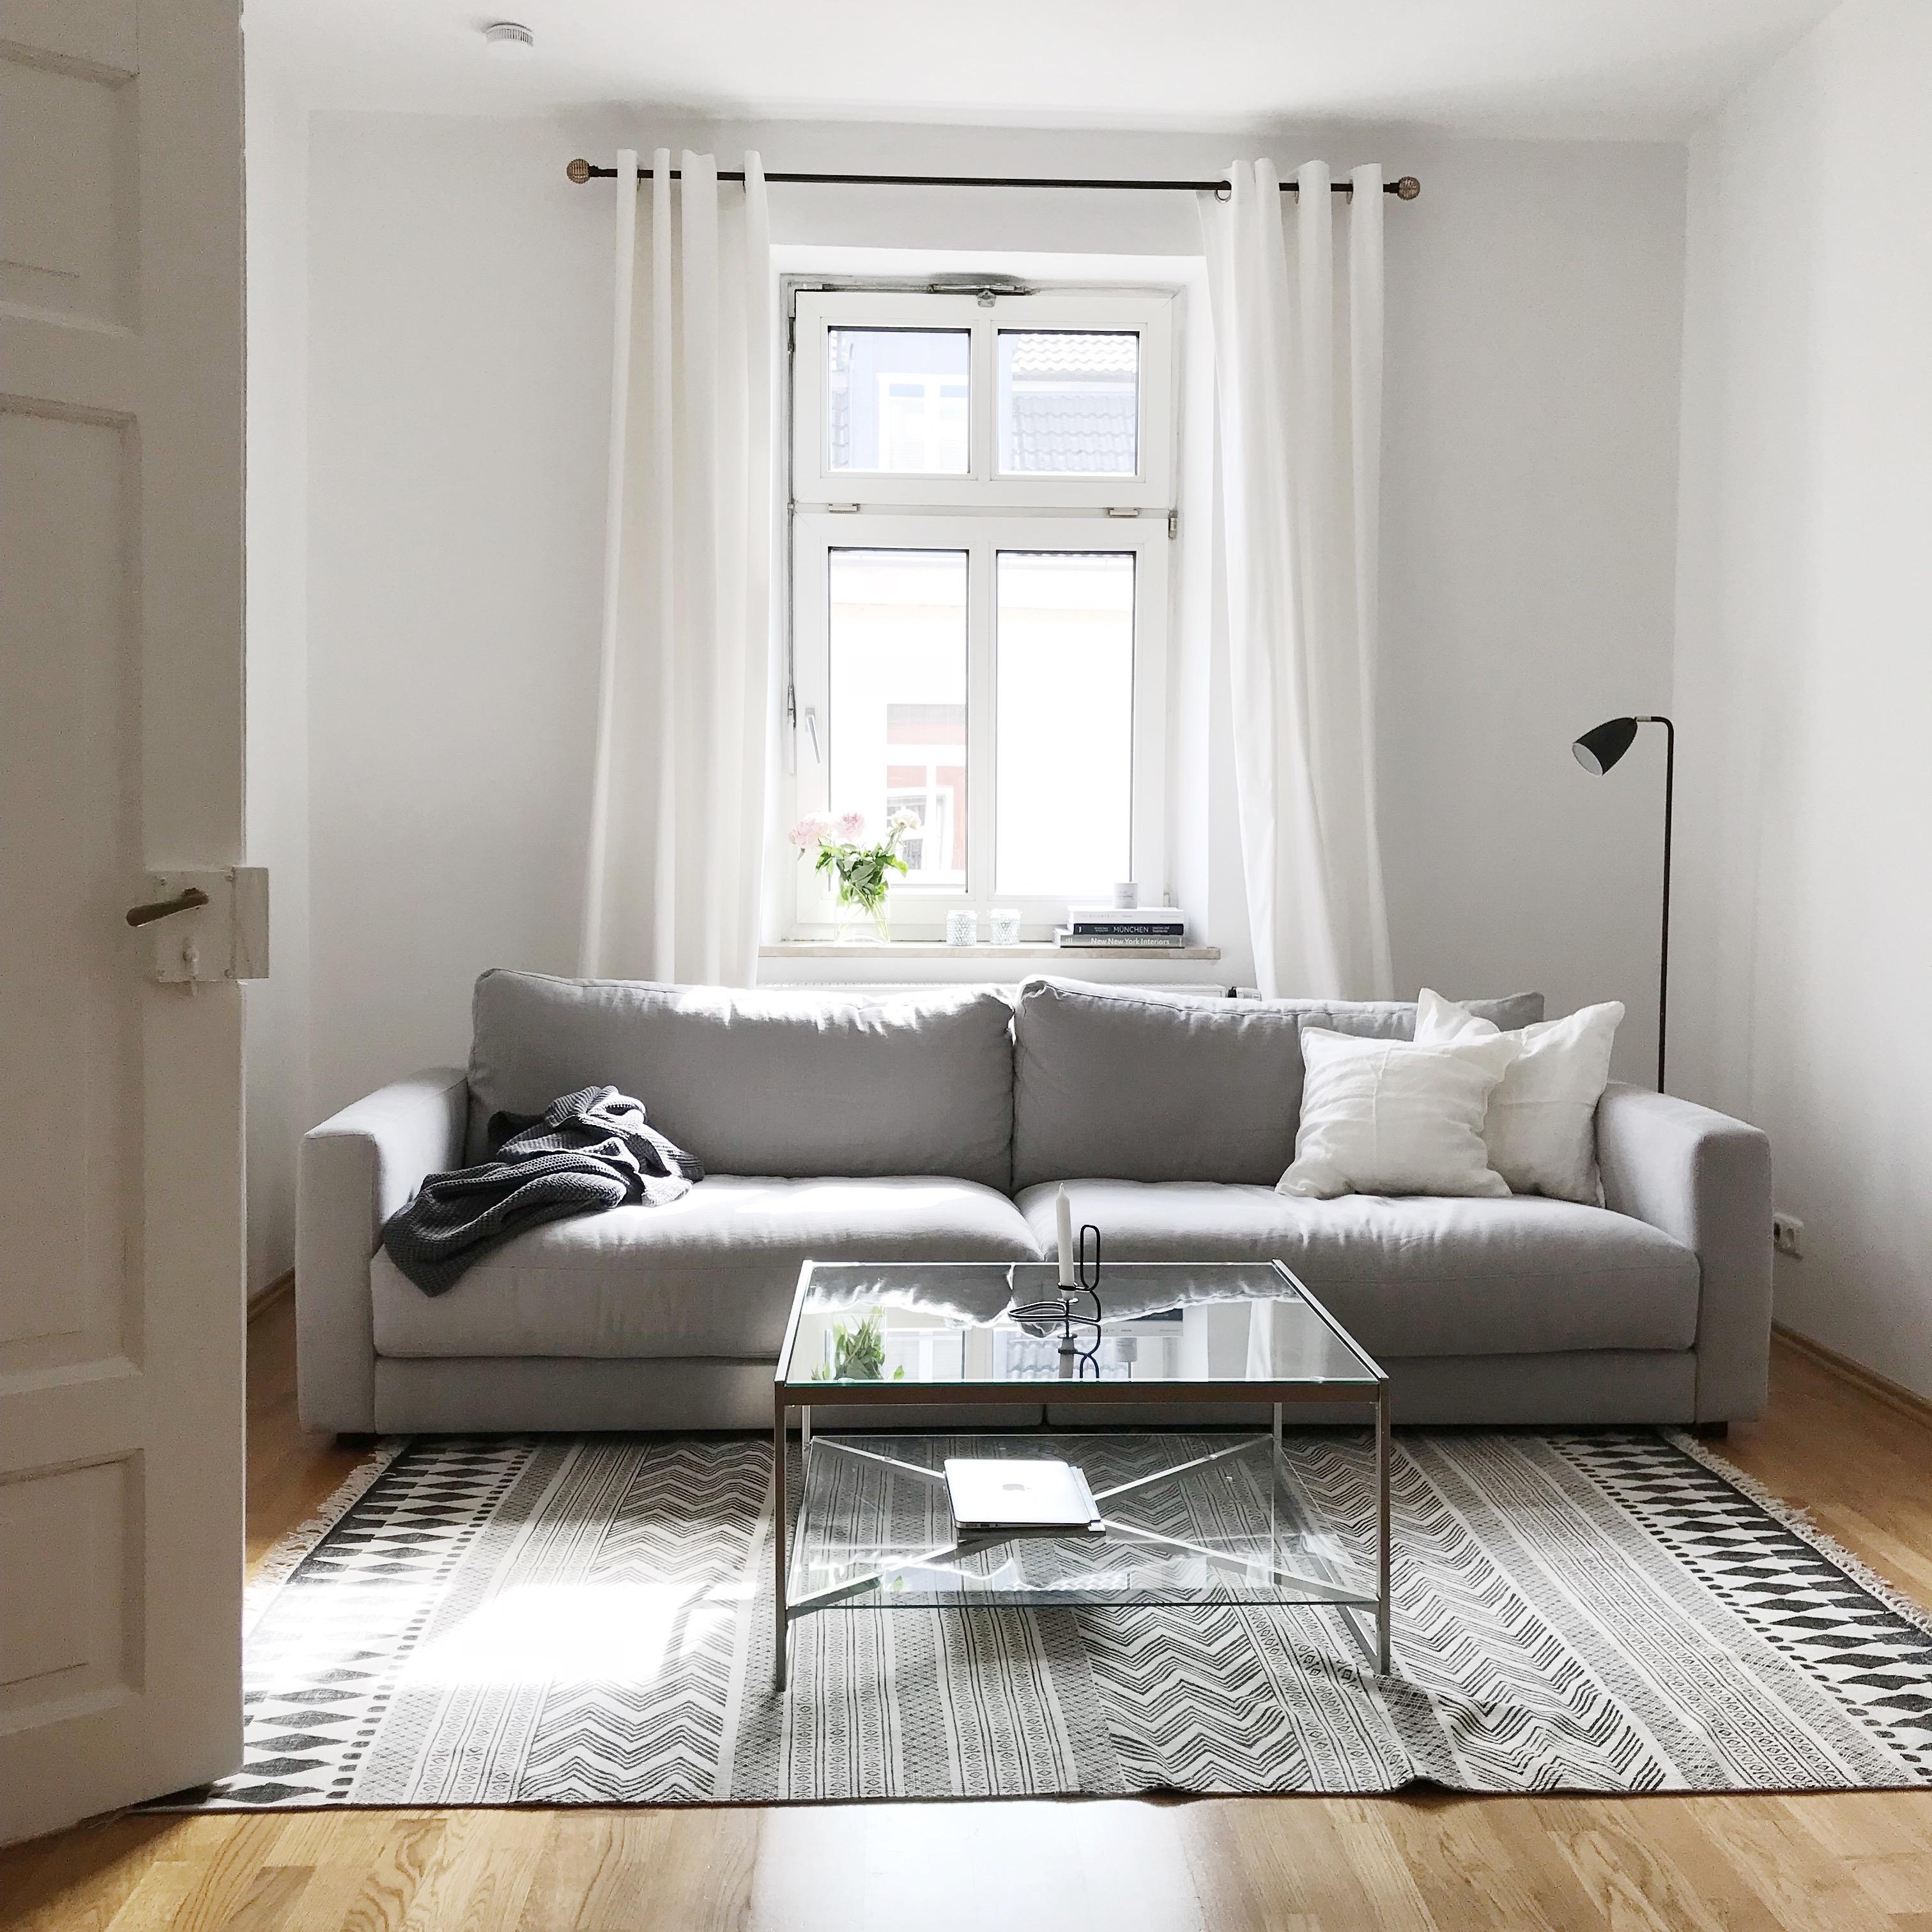 Unser Wohnzimmer 😍
#couchstyle #sofa #sitzfeldt #housedoctor #scandinavianhome 